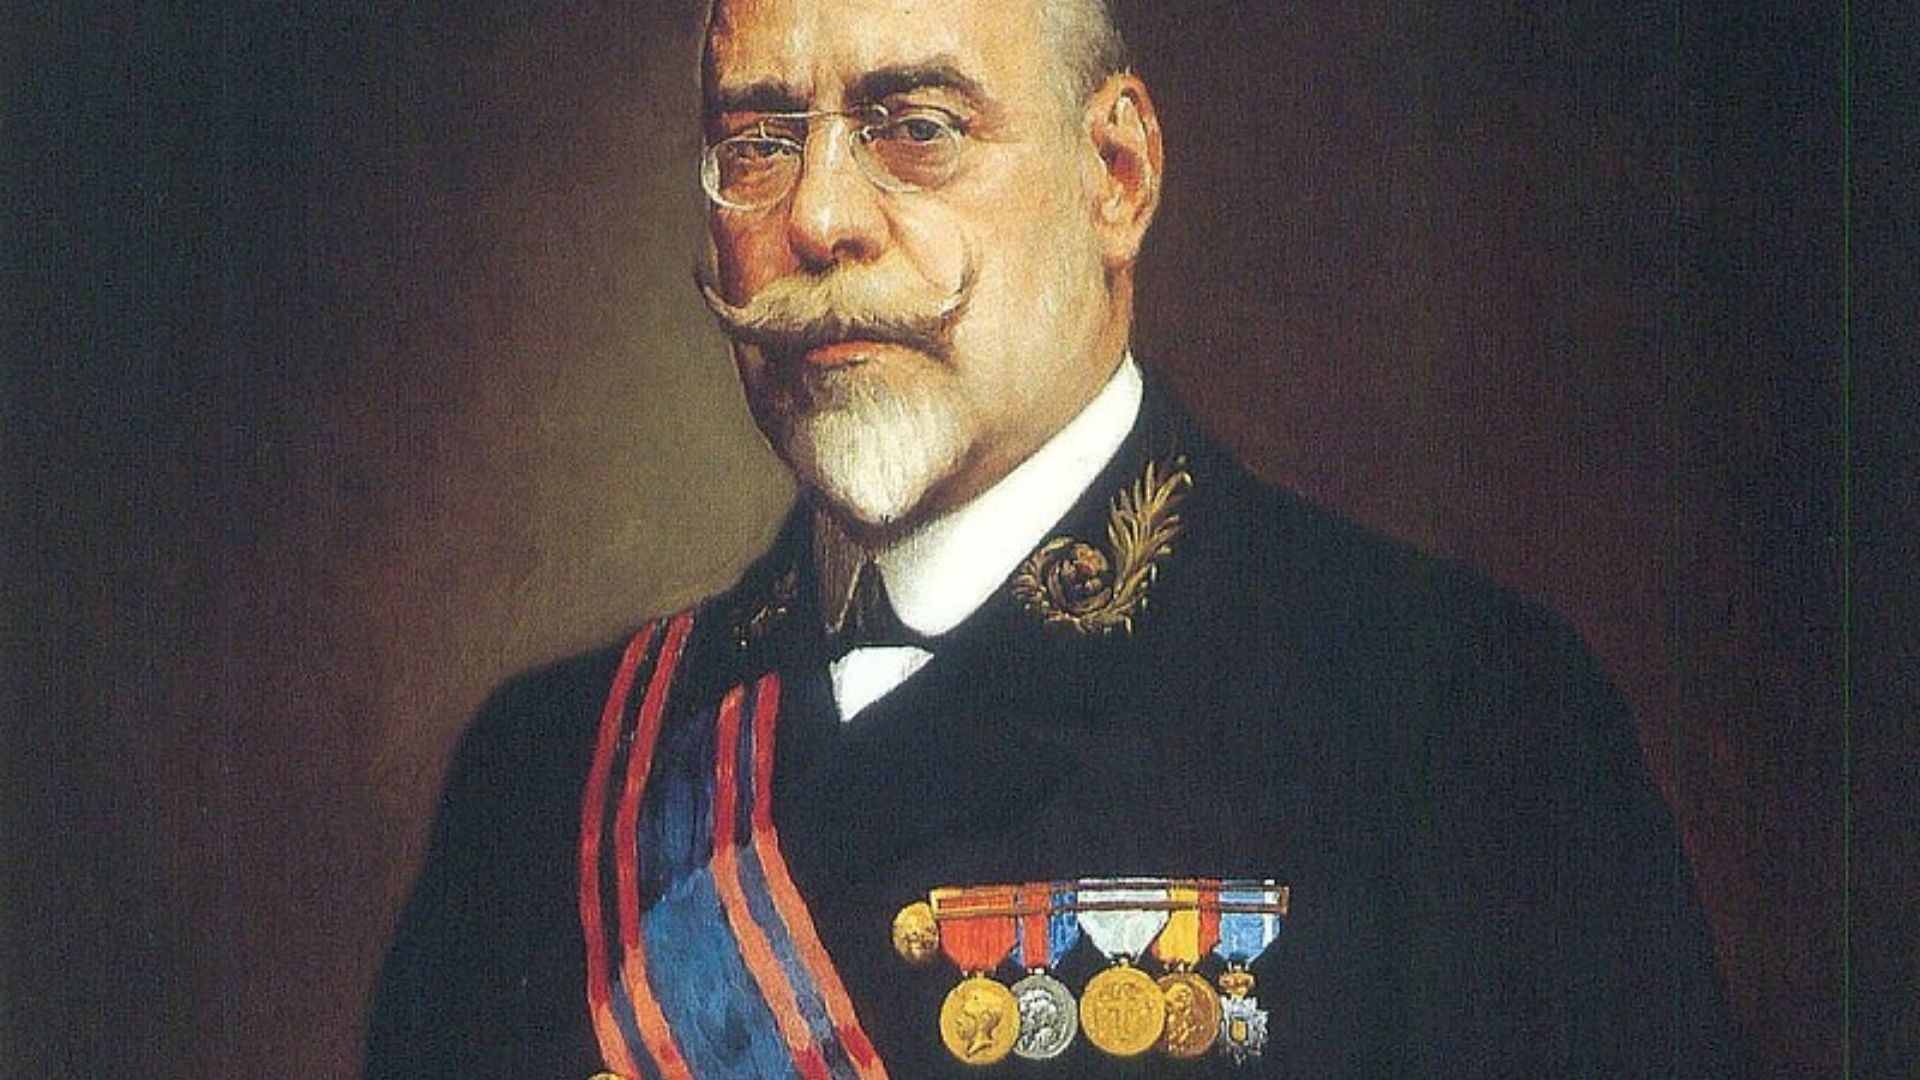 Retrato de Manuel Allendesalazar Muñoz